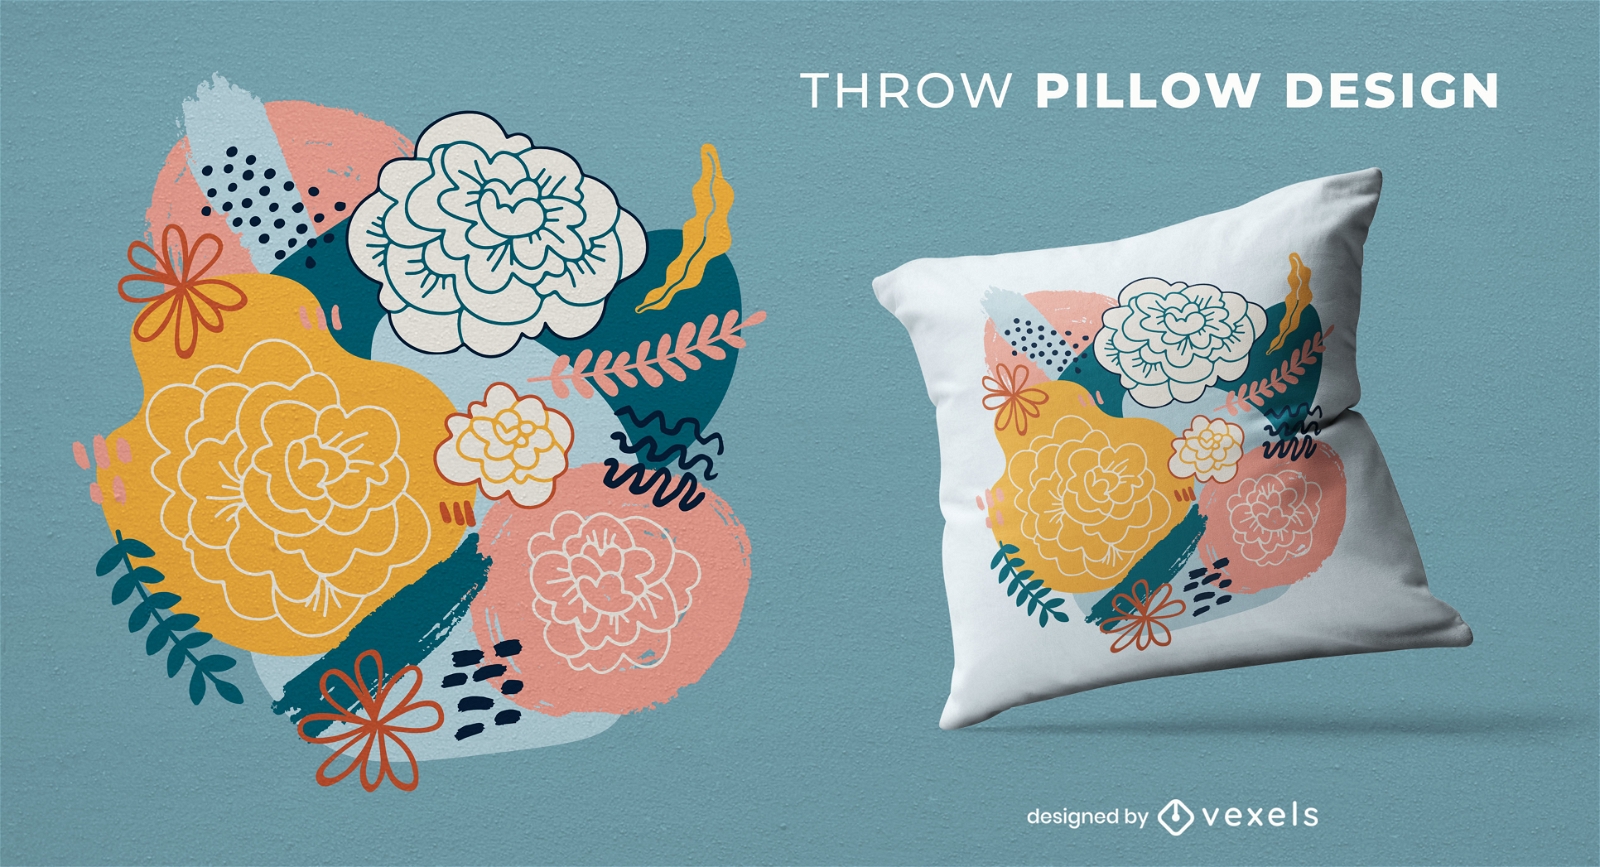 Diseño de almohada de tiro con flores y hojas de rosas.